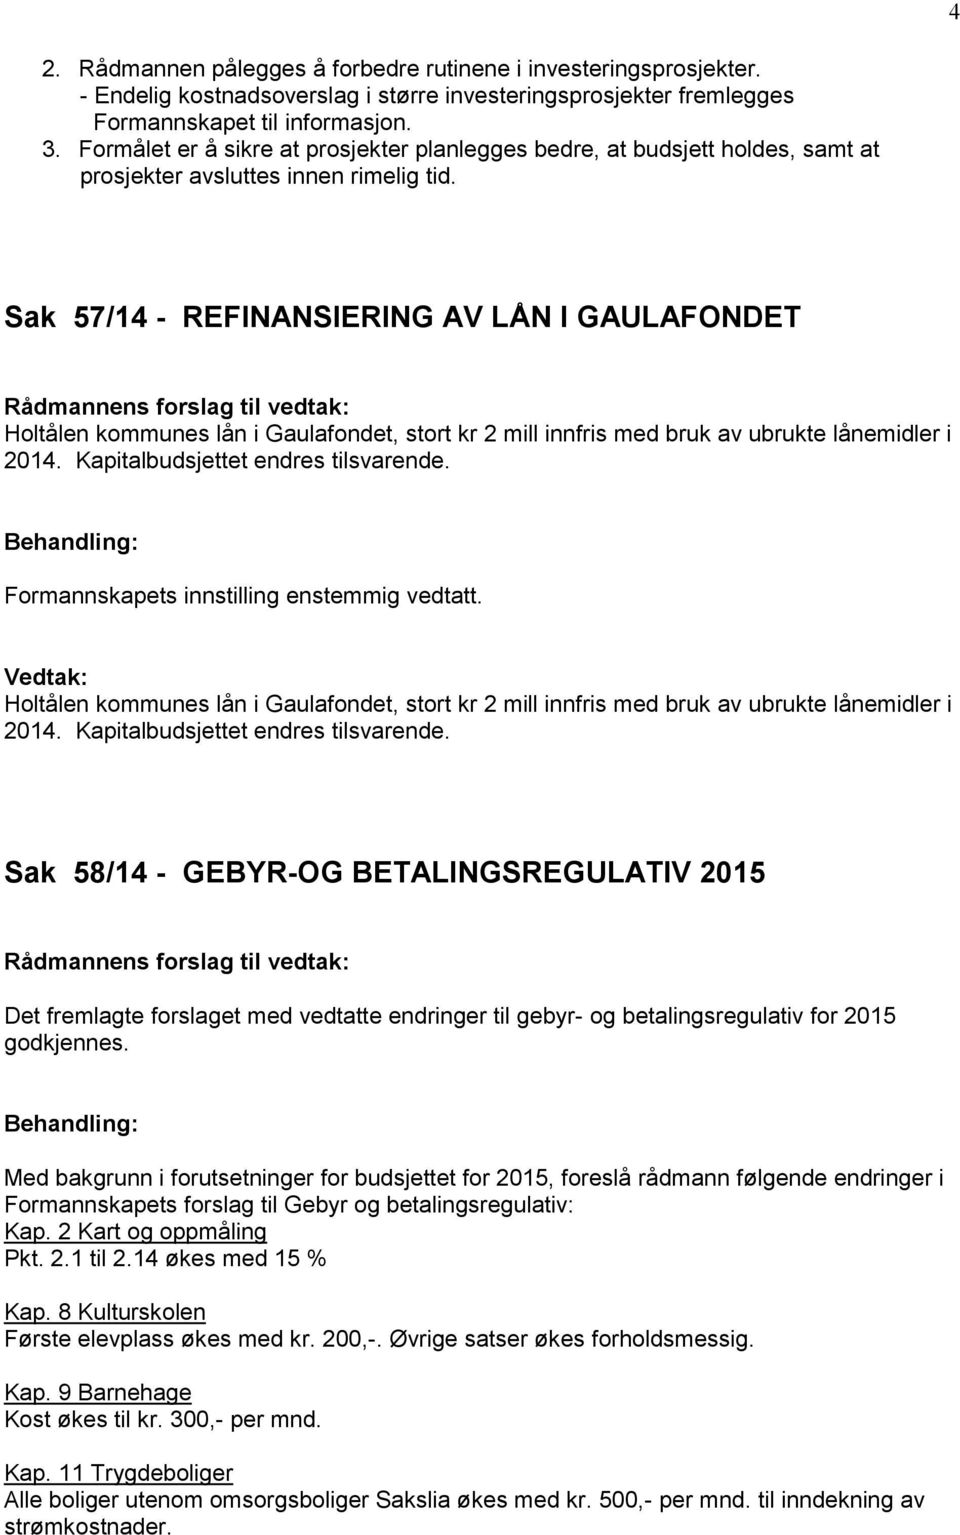 Sak 57/14 - REFINANSIERING AV LÅN I GAULAFONDET Holtålen kommunes lån i Gaulafondet, stort kr 2 mill innfris med bruk av ubrukte lånemidler i 2014. Kapitalbudsjettet endres tilsvarende.